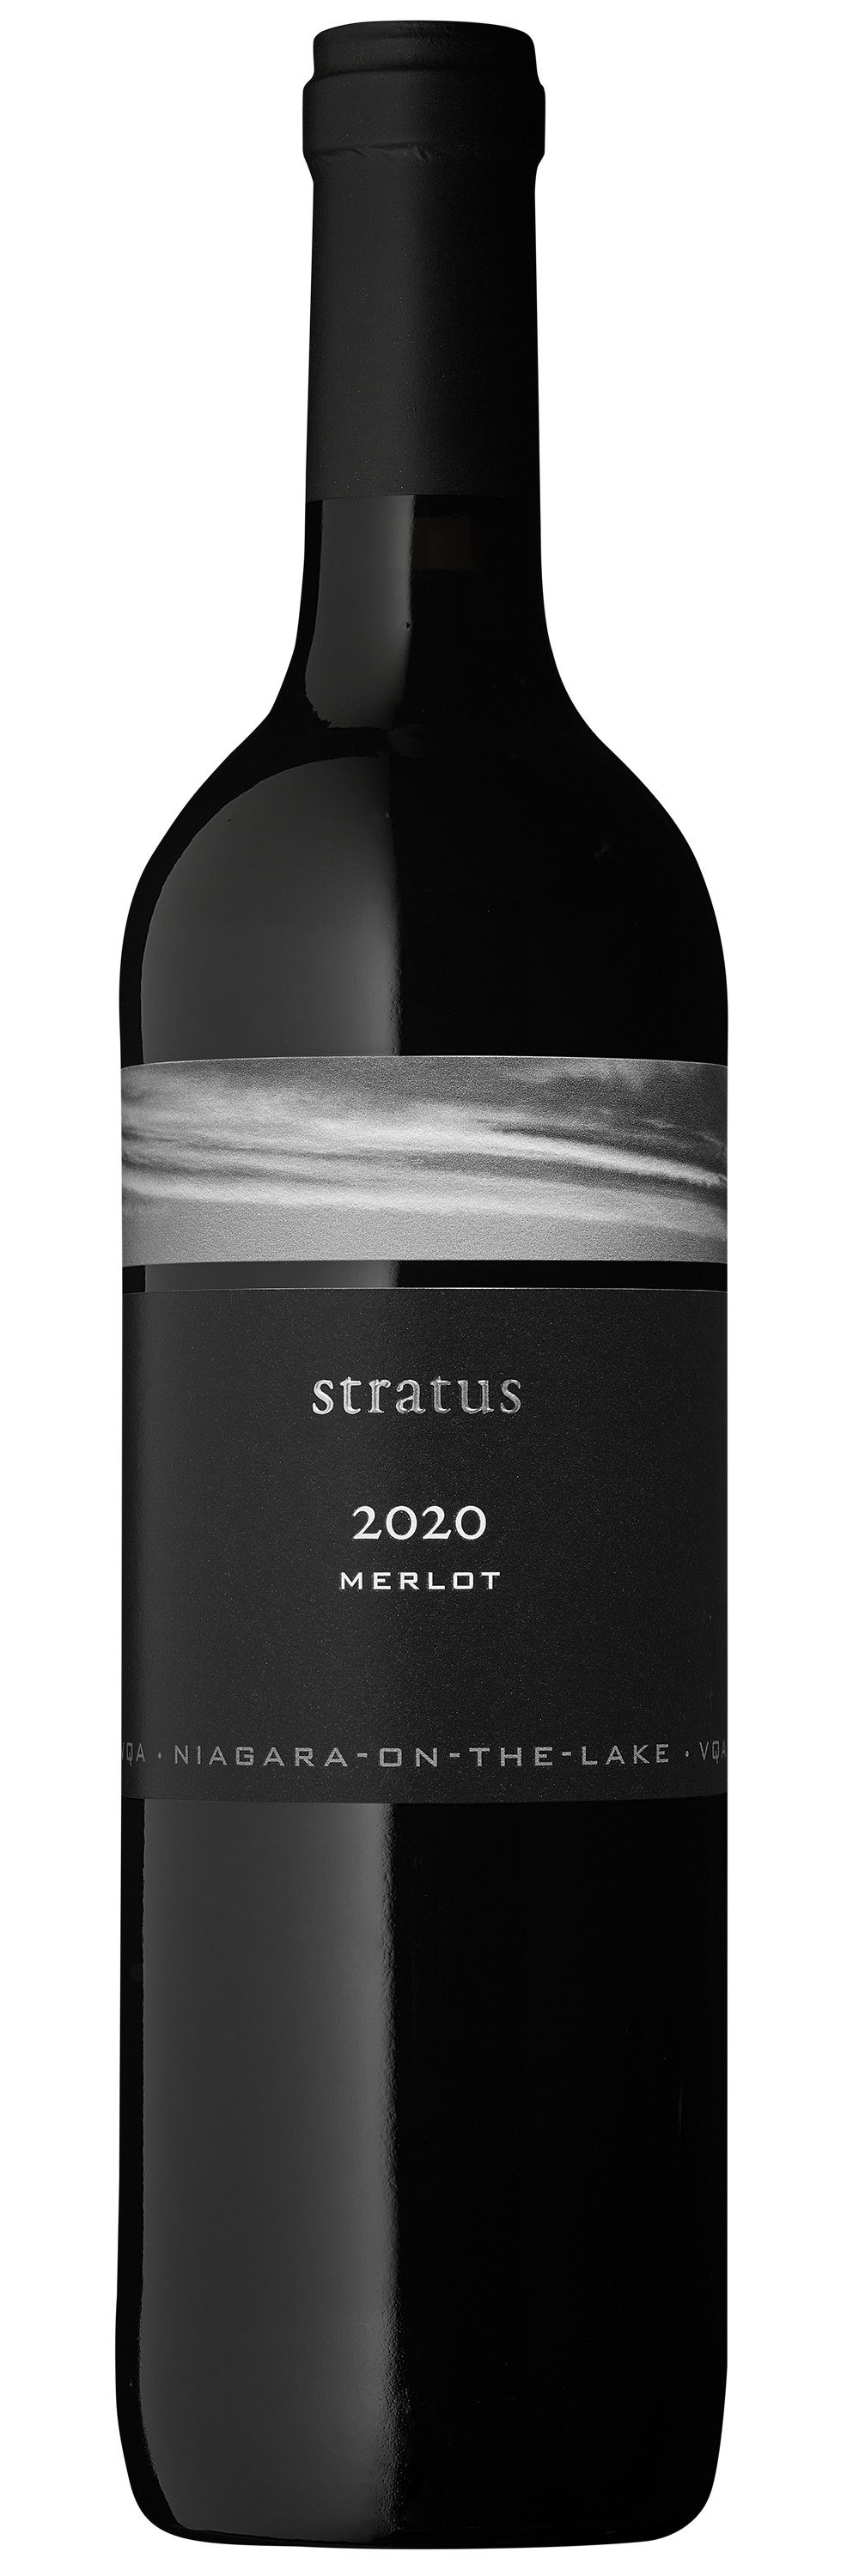 2020 Stratus Merlot